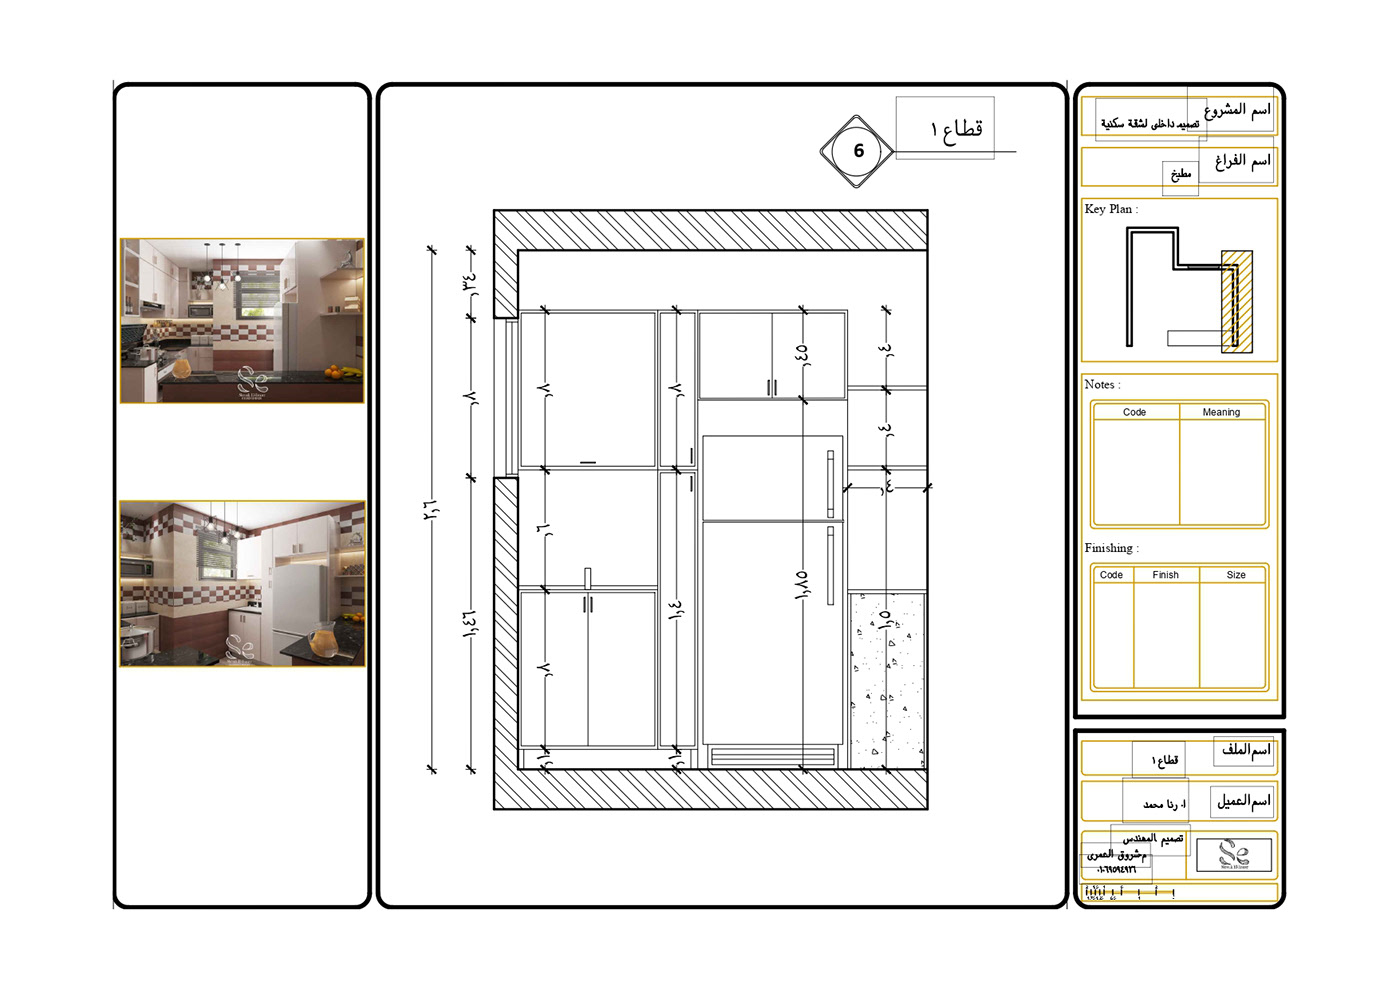 3ds max architecture design Interior interior design  kitchen kitchen design modern Modern Design Render